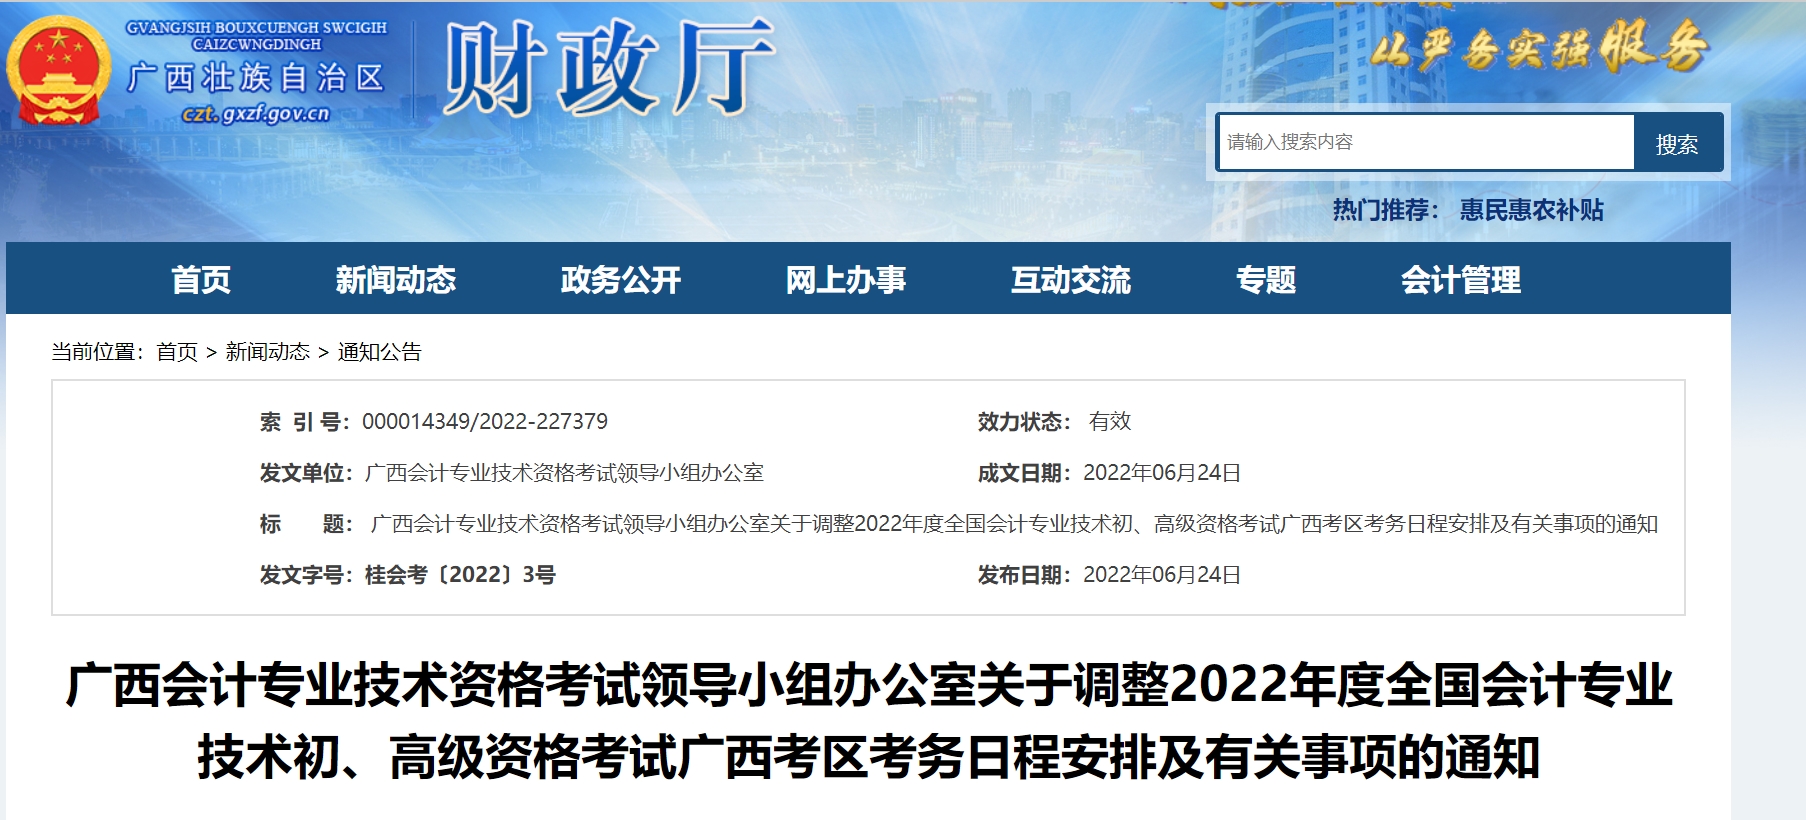 广西自治区贺州关于调整2022年度初级会计考试考务日程安排及有关事项的通知